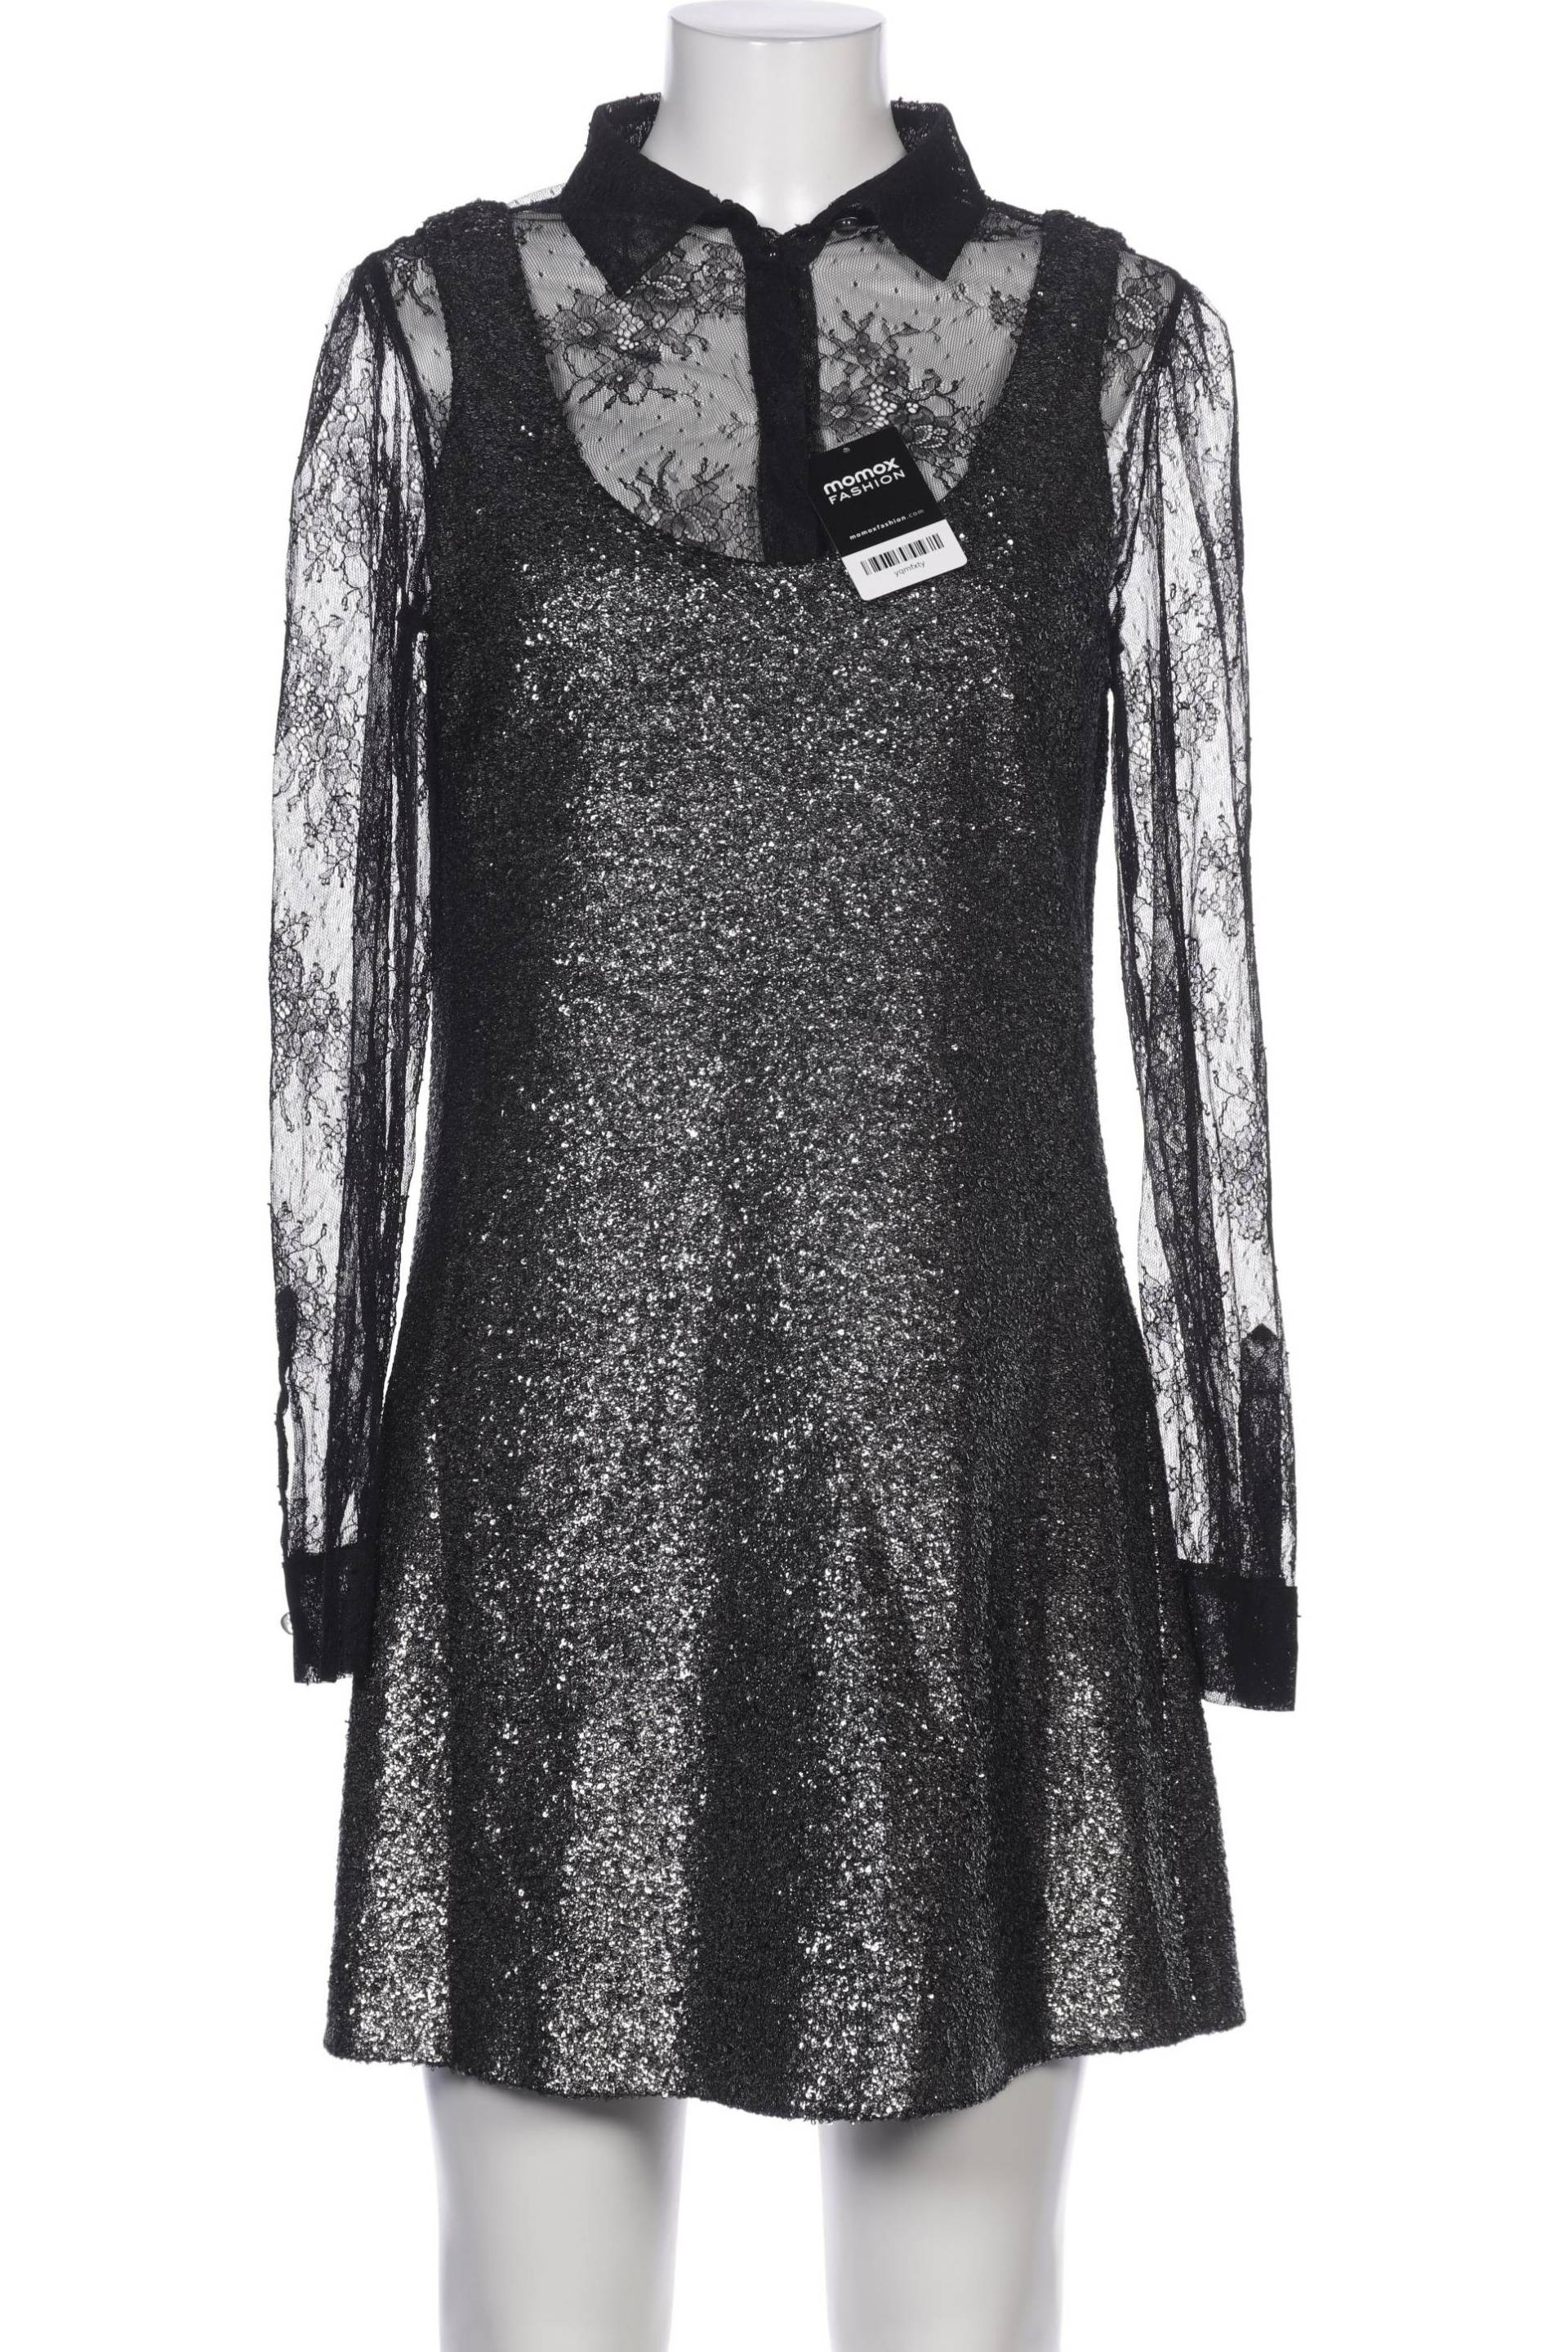 Moschino Damen Kleid, schwarz, Gr. 40 von Moschino